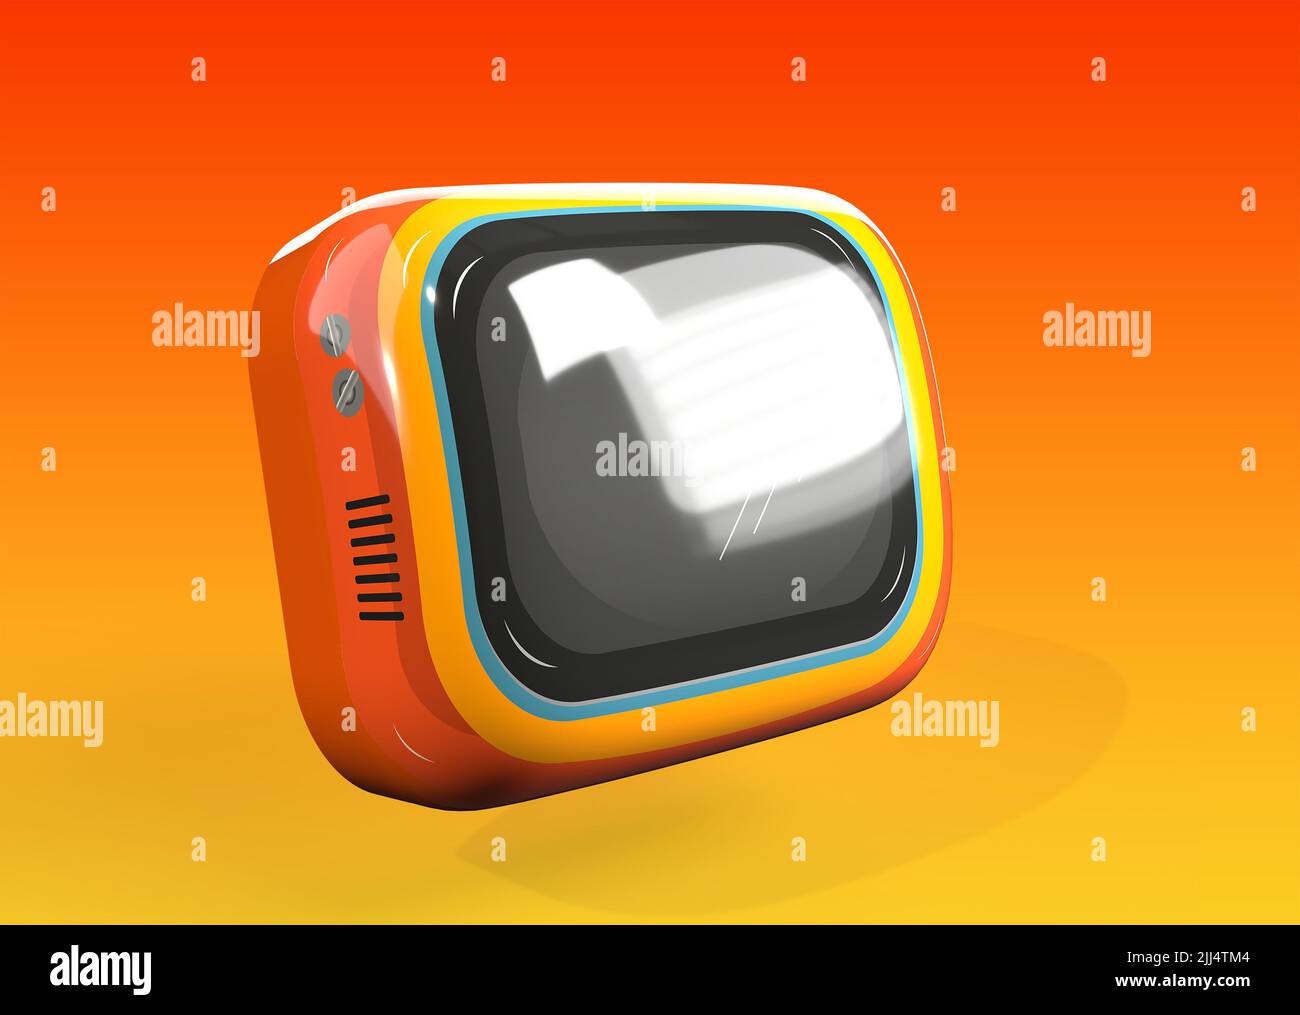 Retro TV 3D Renderece sobre un colorido fondo naranja y amarillo Foto de stock